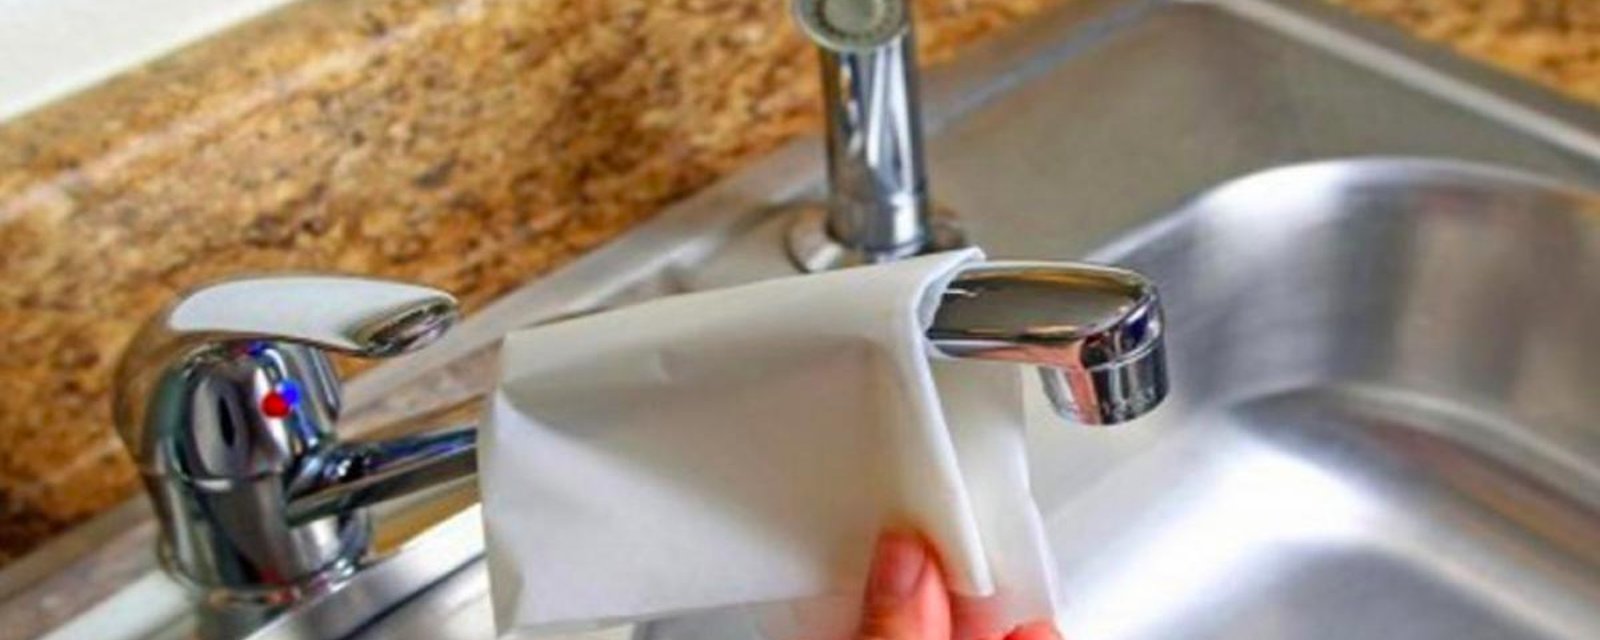 10 façons d'utiliser le papier ciré autres que pour la cuisson